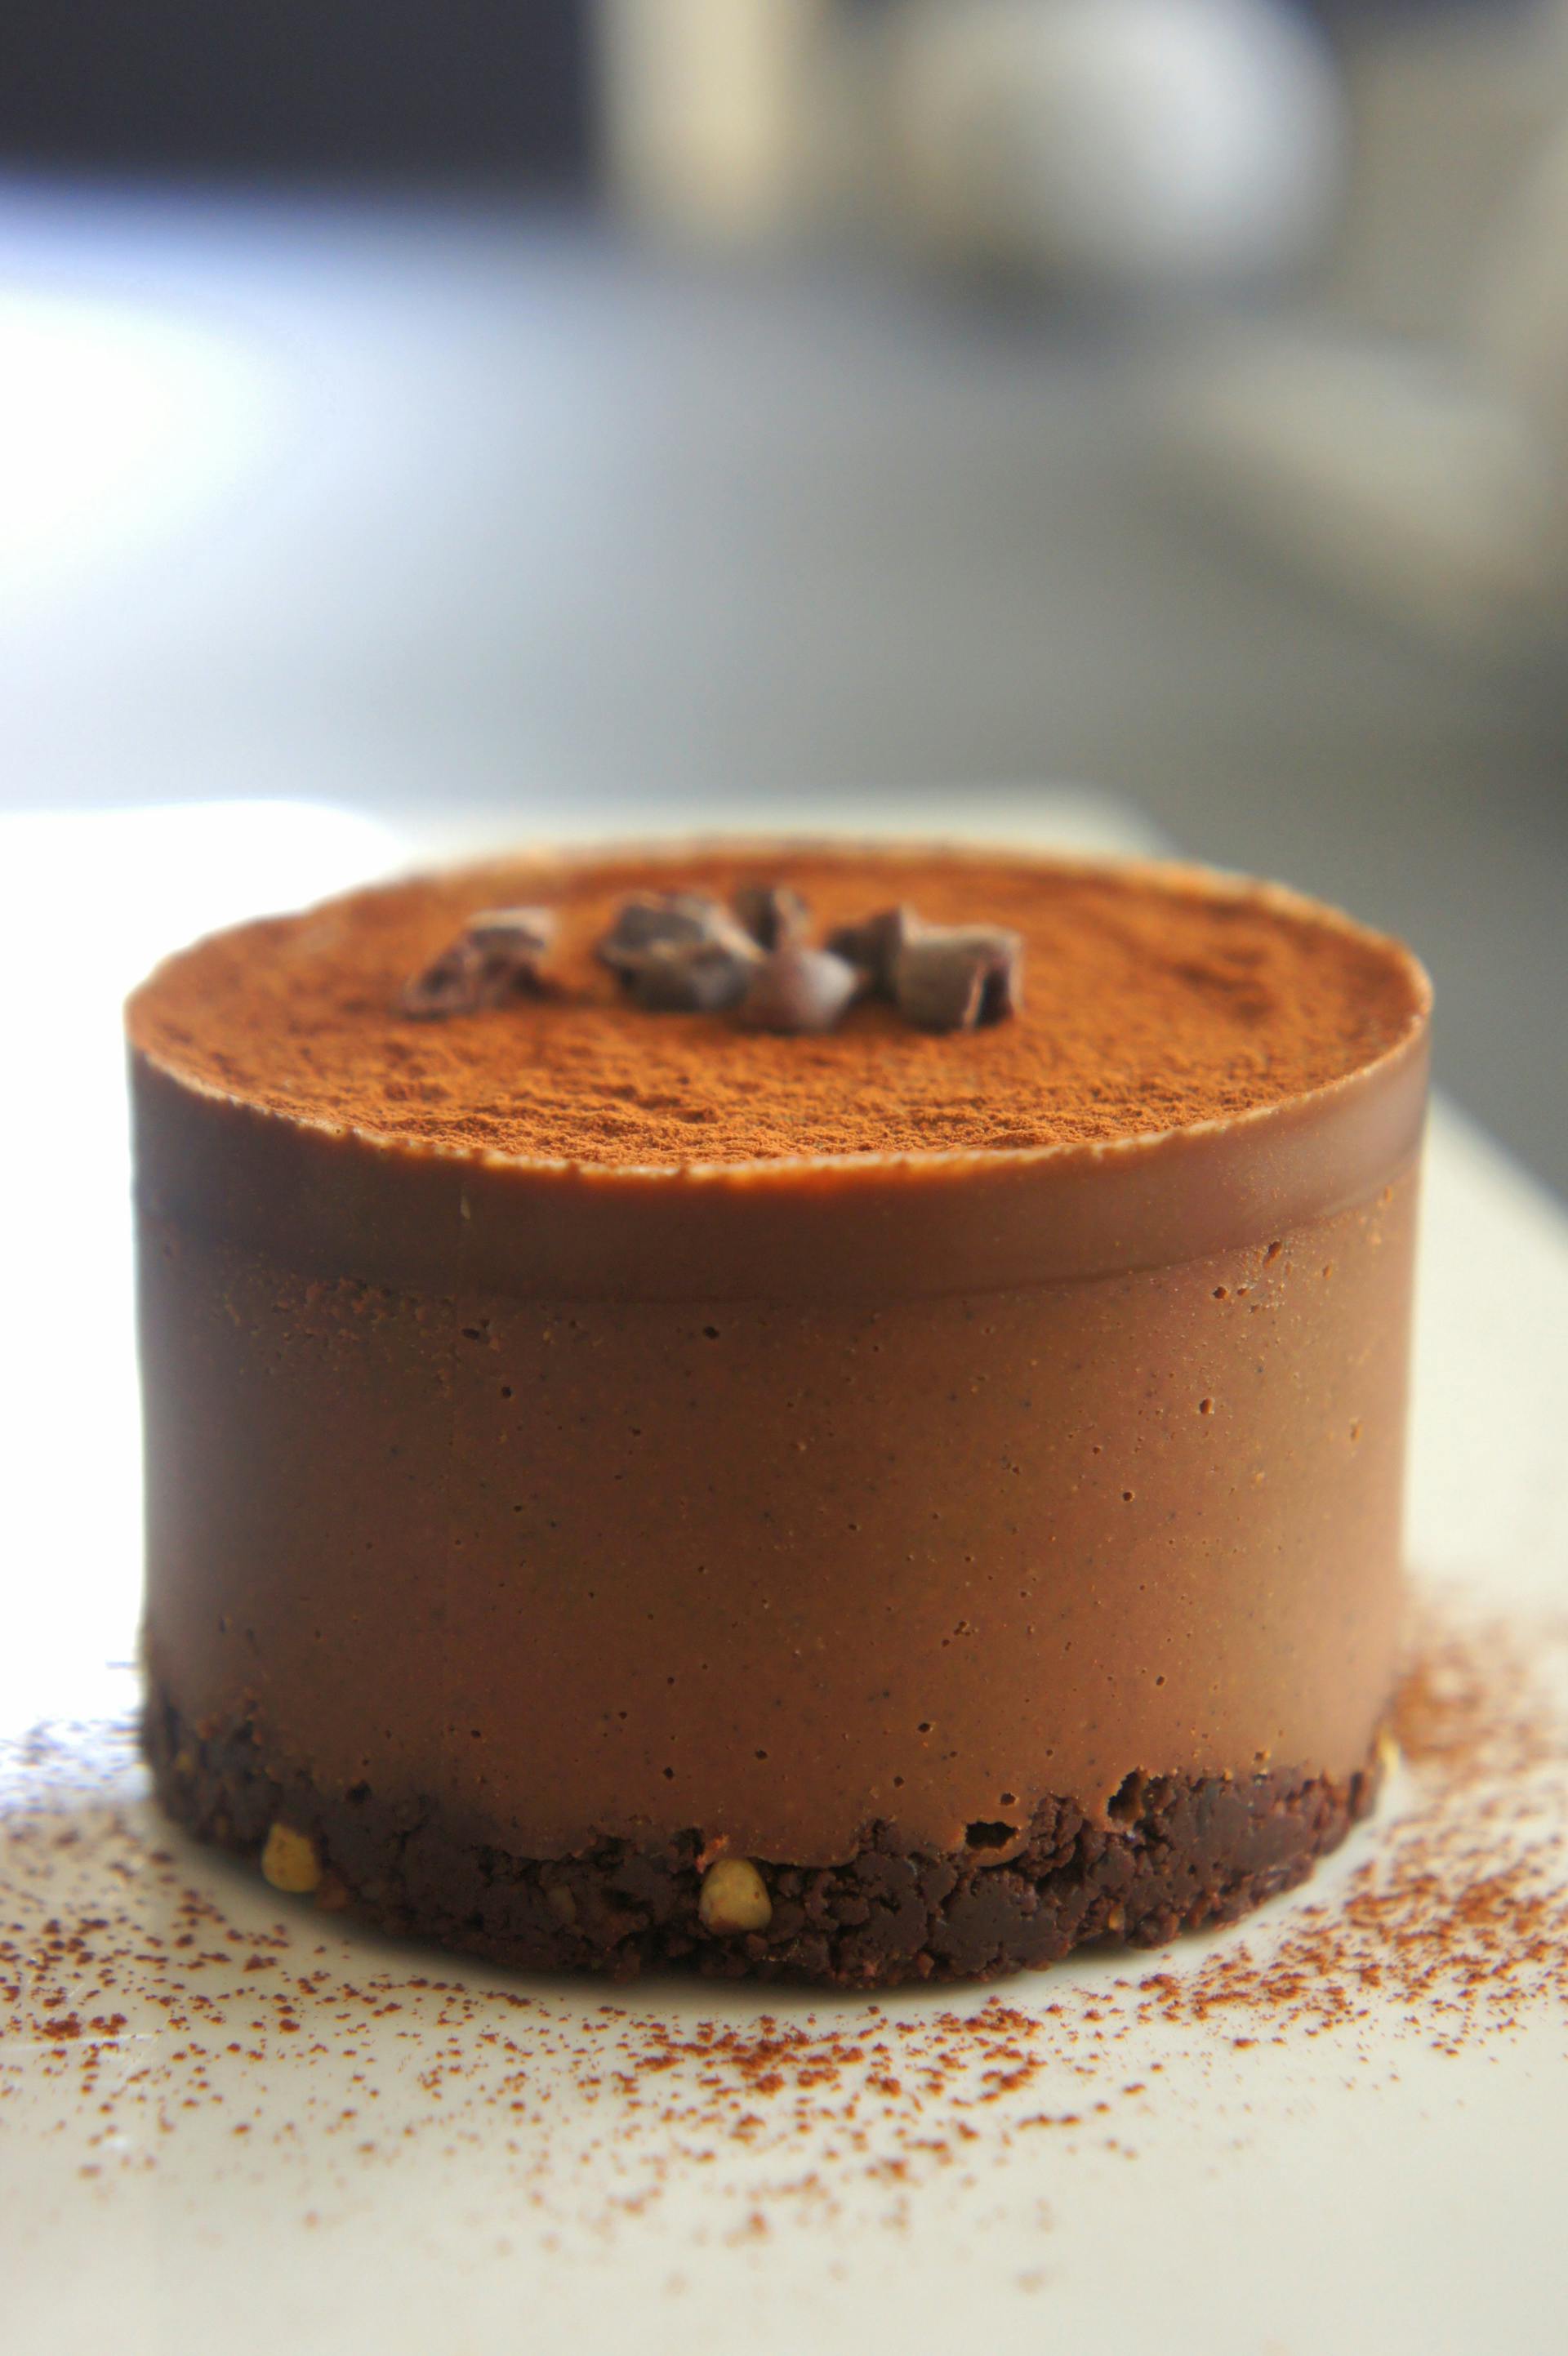 Un pastel de chocolate | Fuente: Pexels